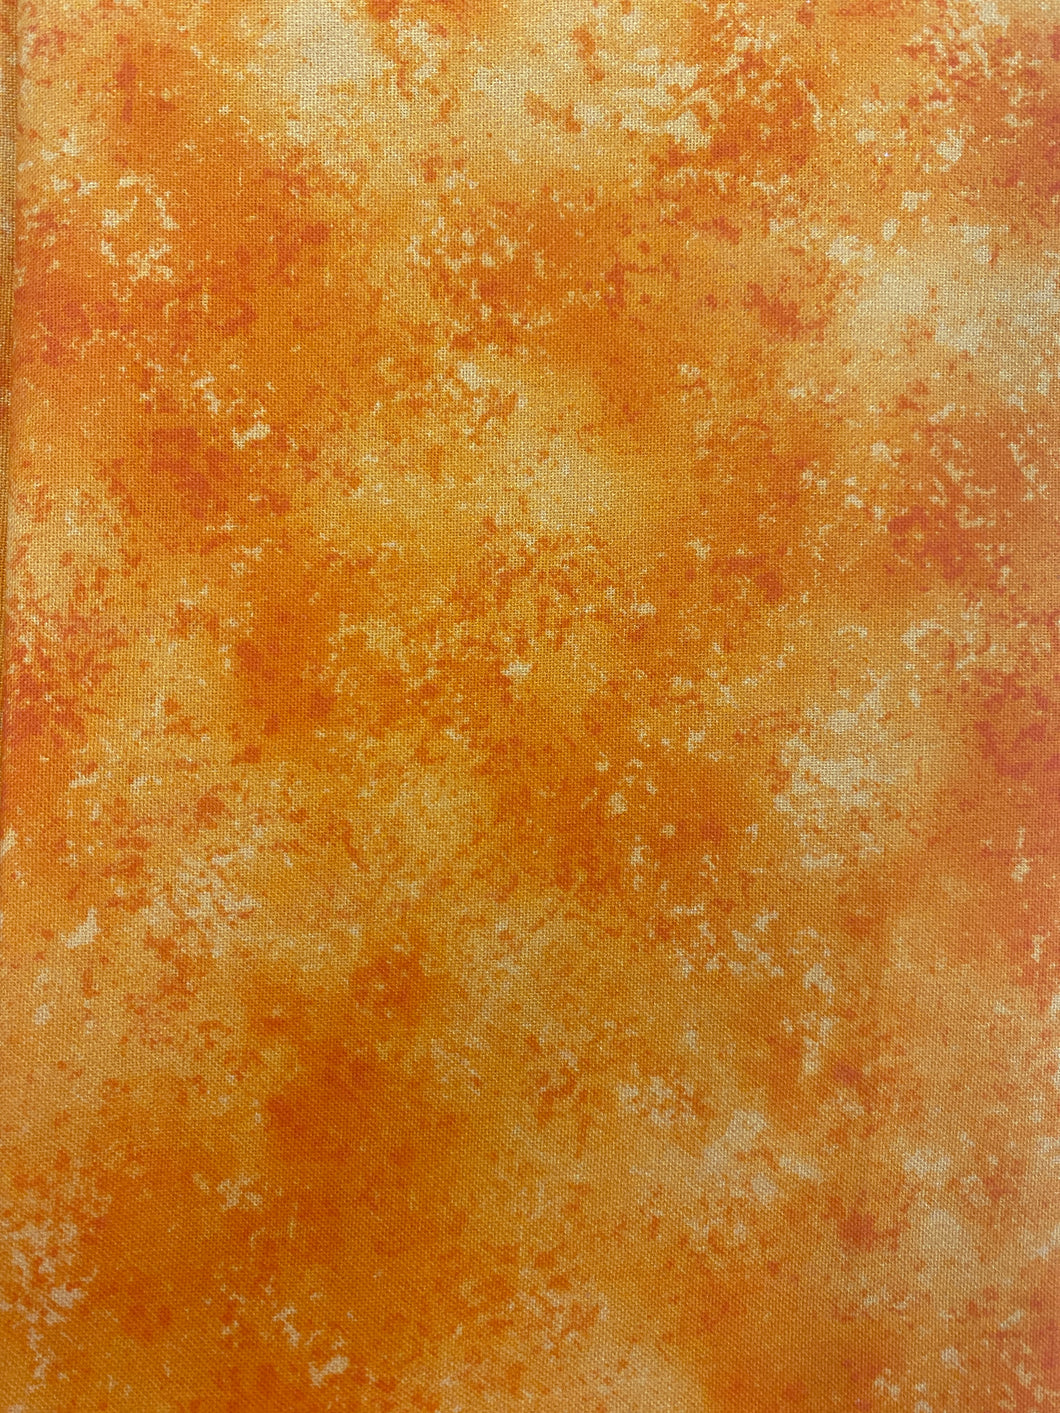 Tangerine Orange Fabric